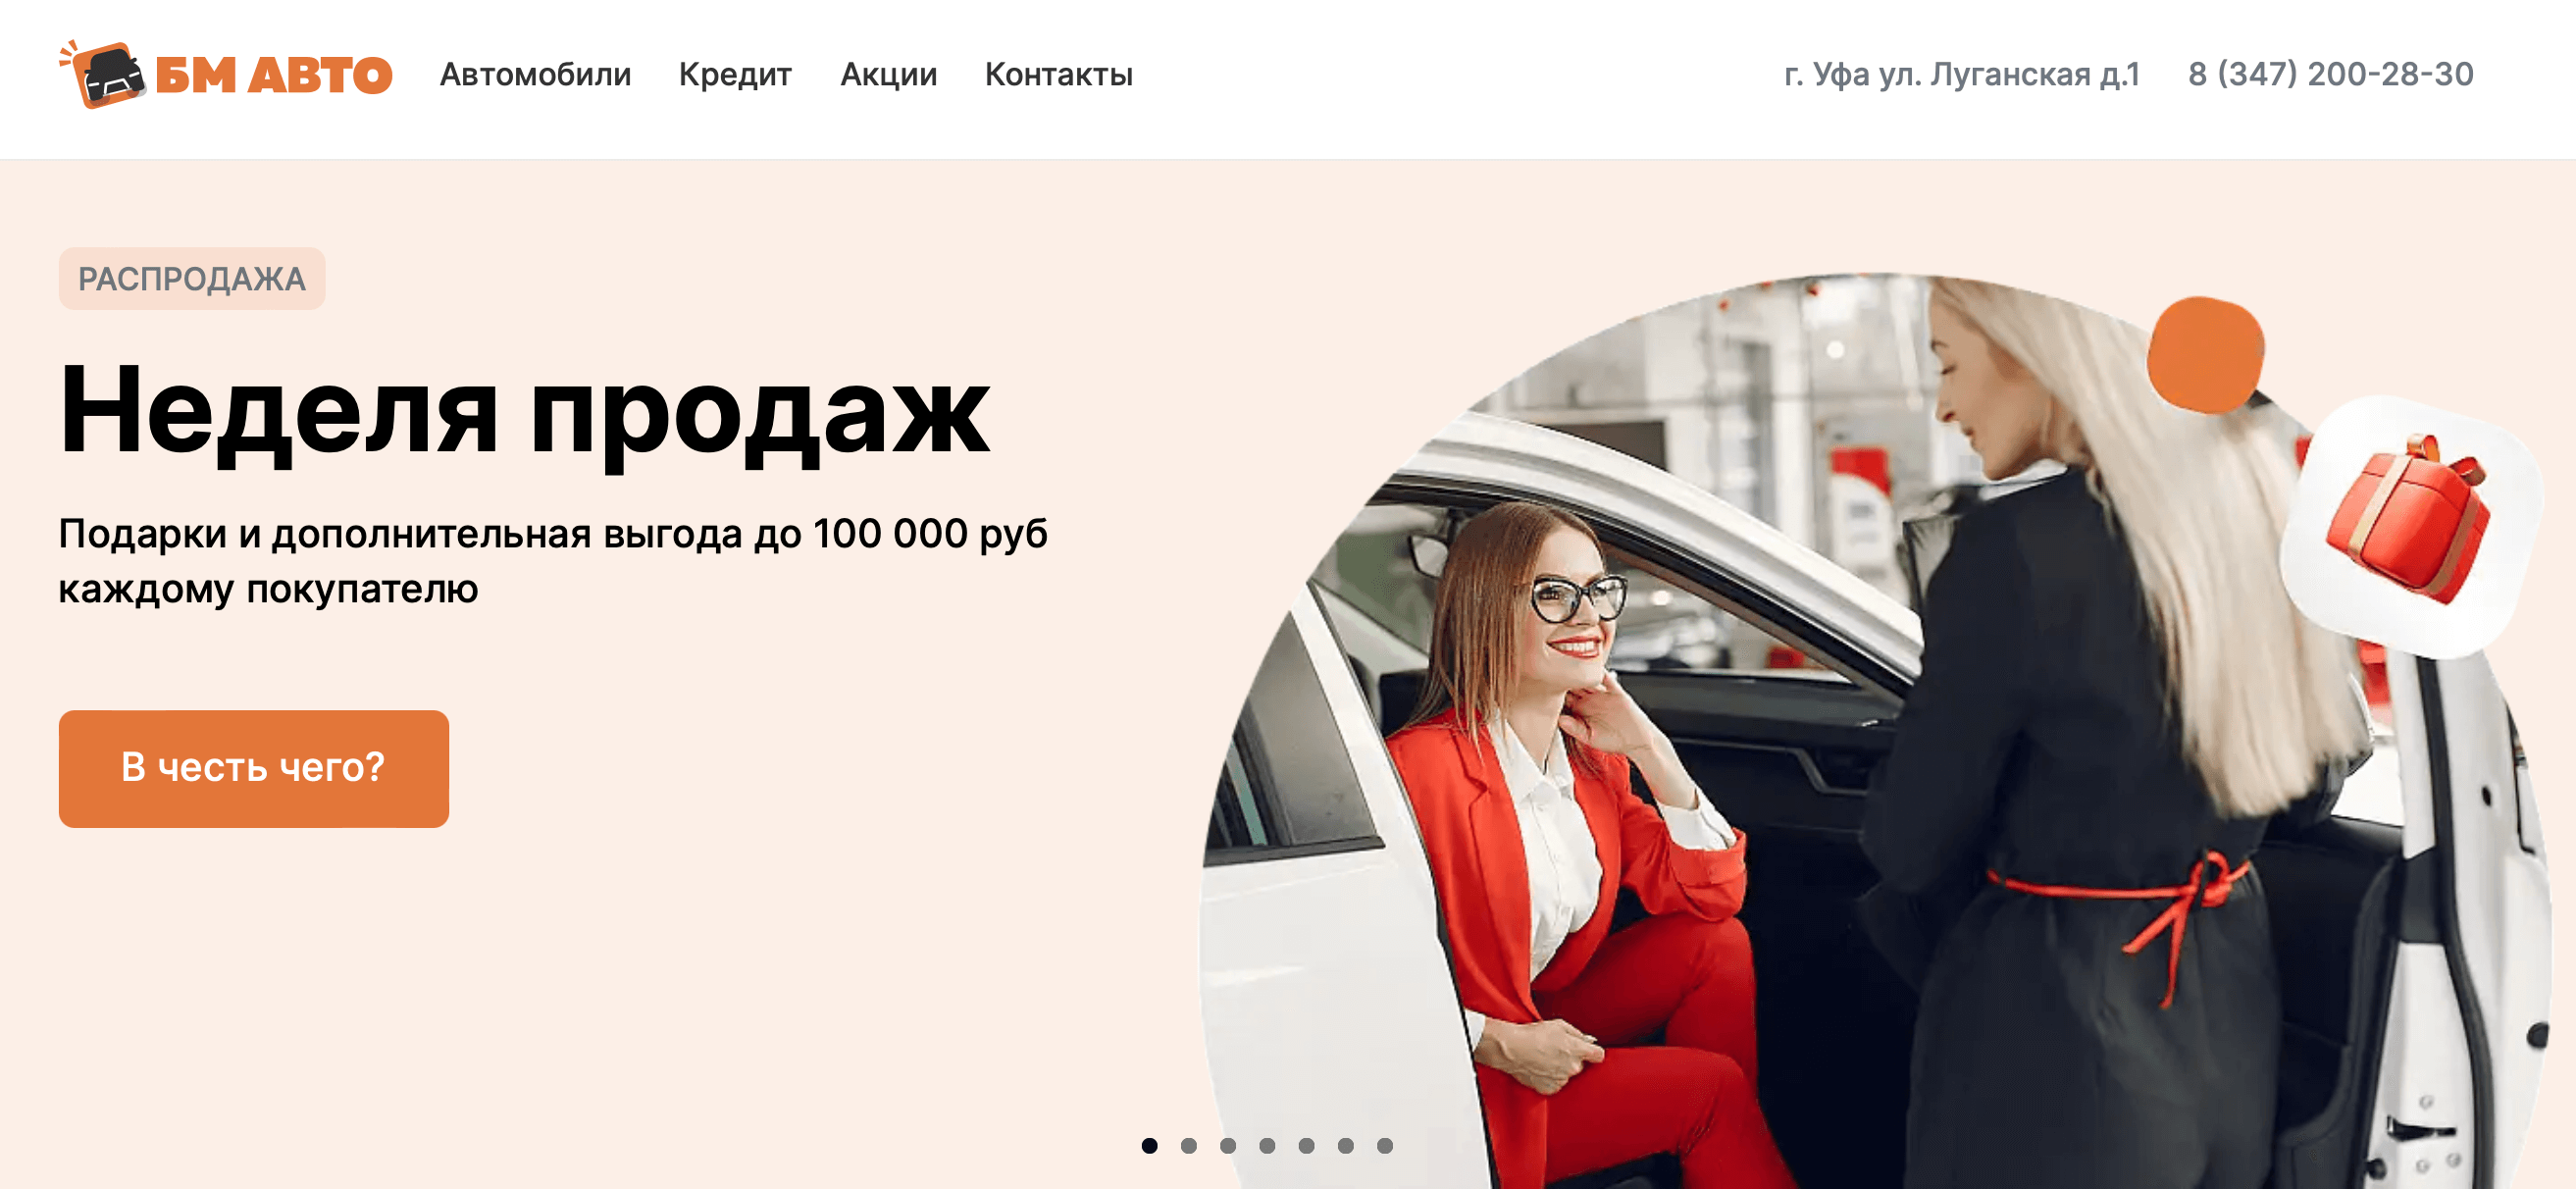 bm-avto-ufa-luganskaya-otzyvy